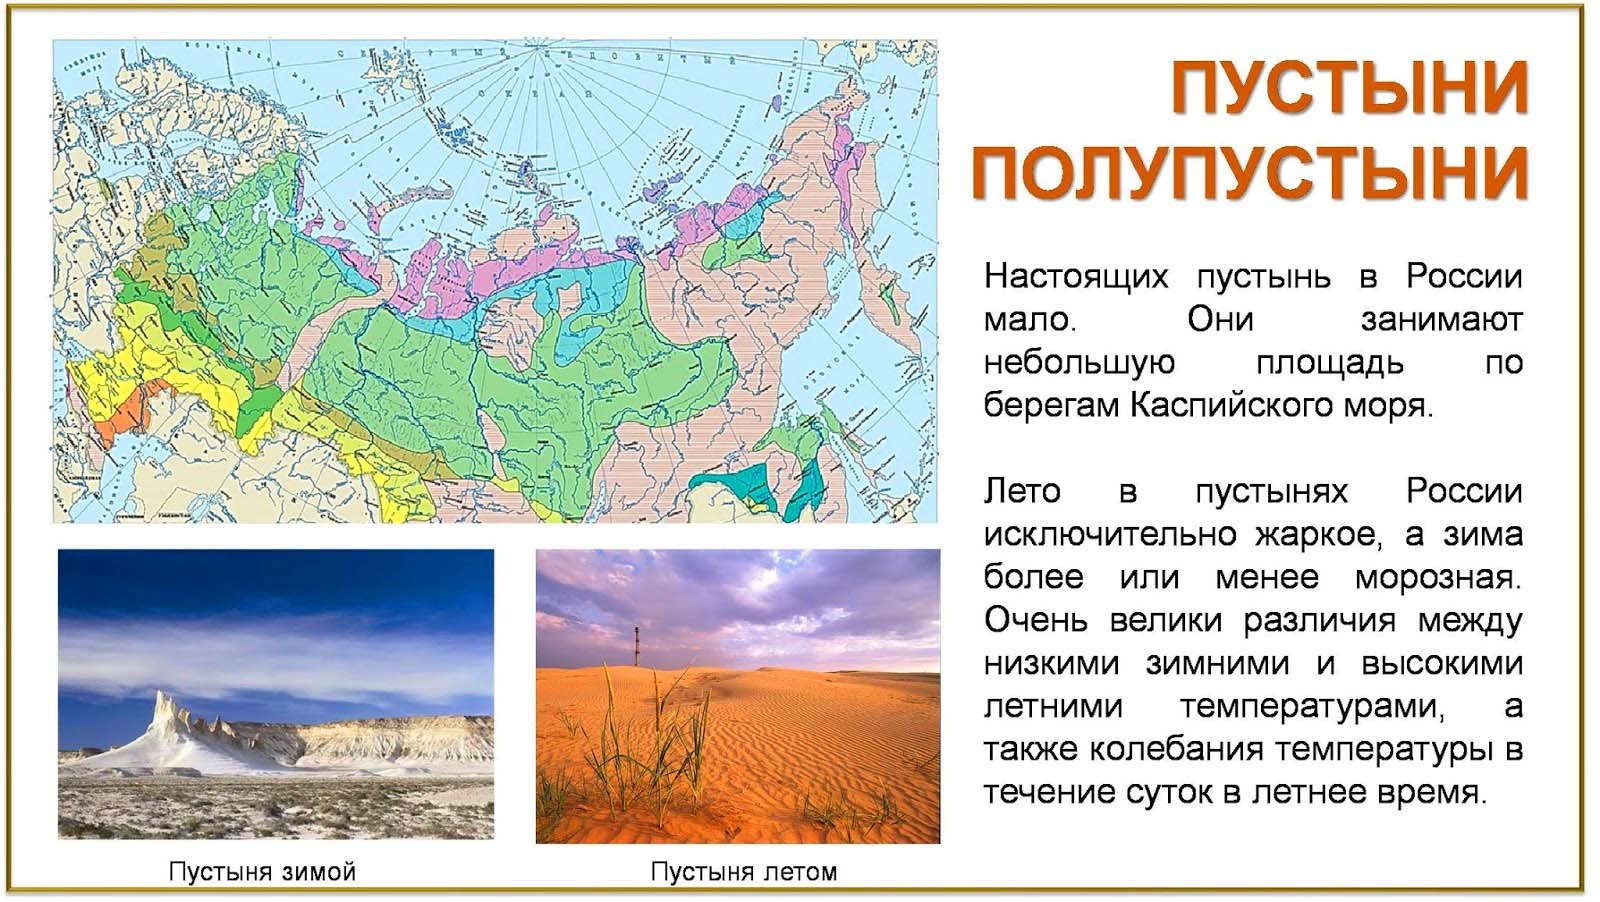 Зона пустынь и полупустынь на карте. Зона пустынь и полупустынь в России на карте. Карта пустынь России. Расположение пустынь в России. Пустыни и полупустыни России на карте.